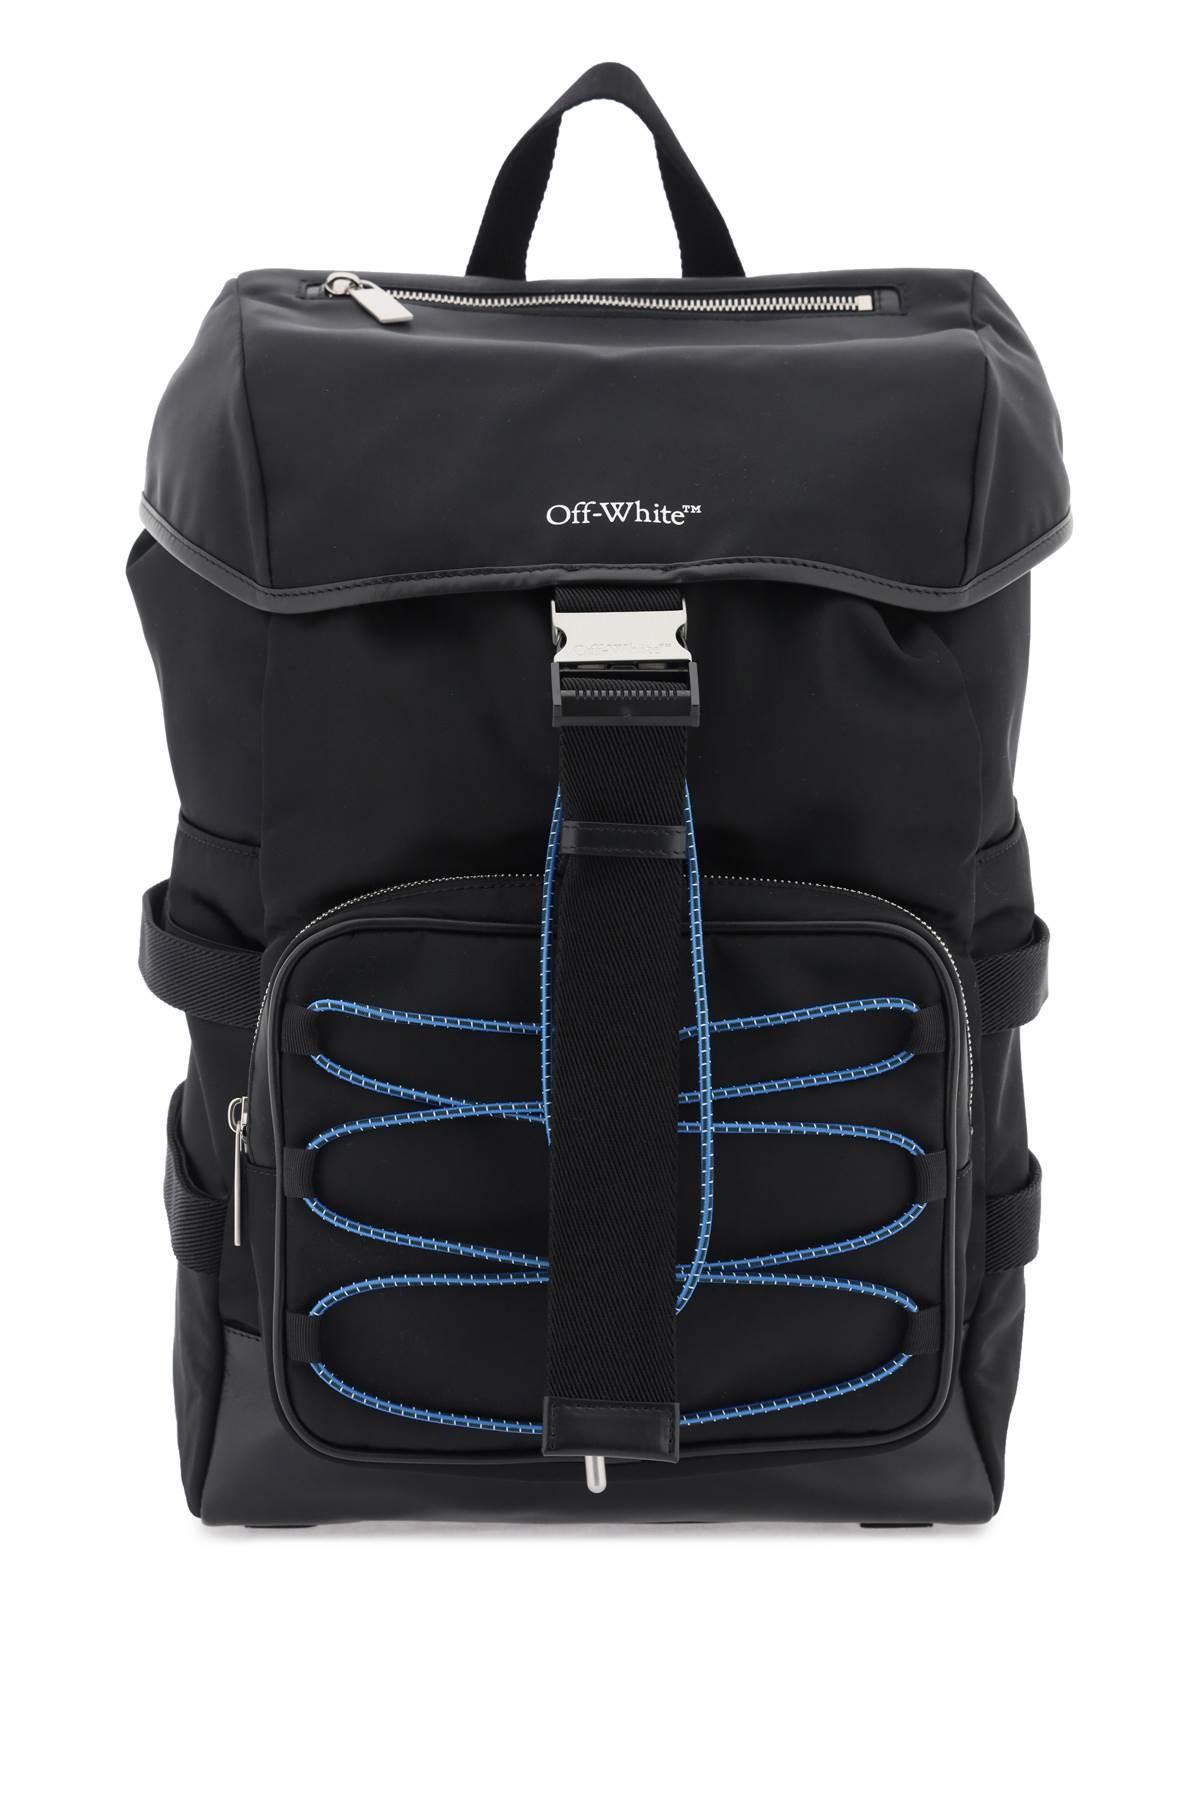 Off-White c/o Virgil Abloh Nylon Backpack With Logo in Black for Men